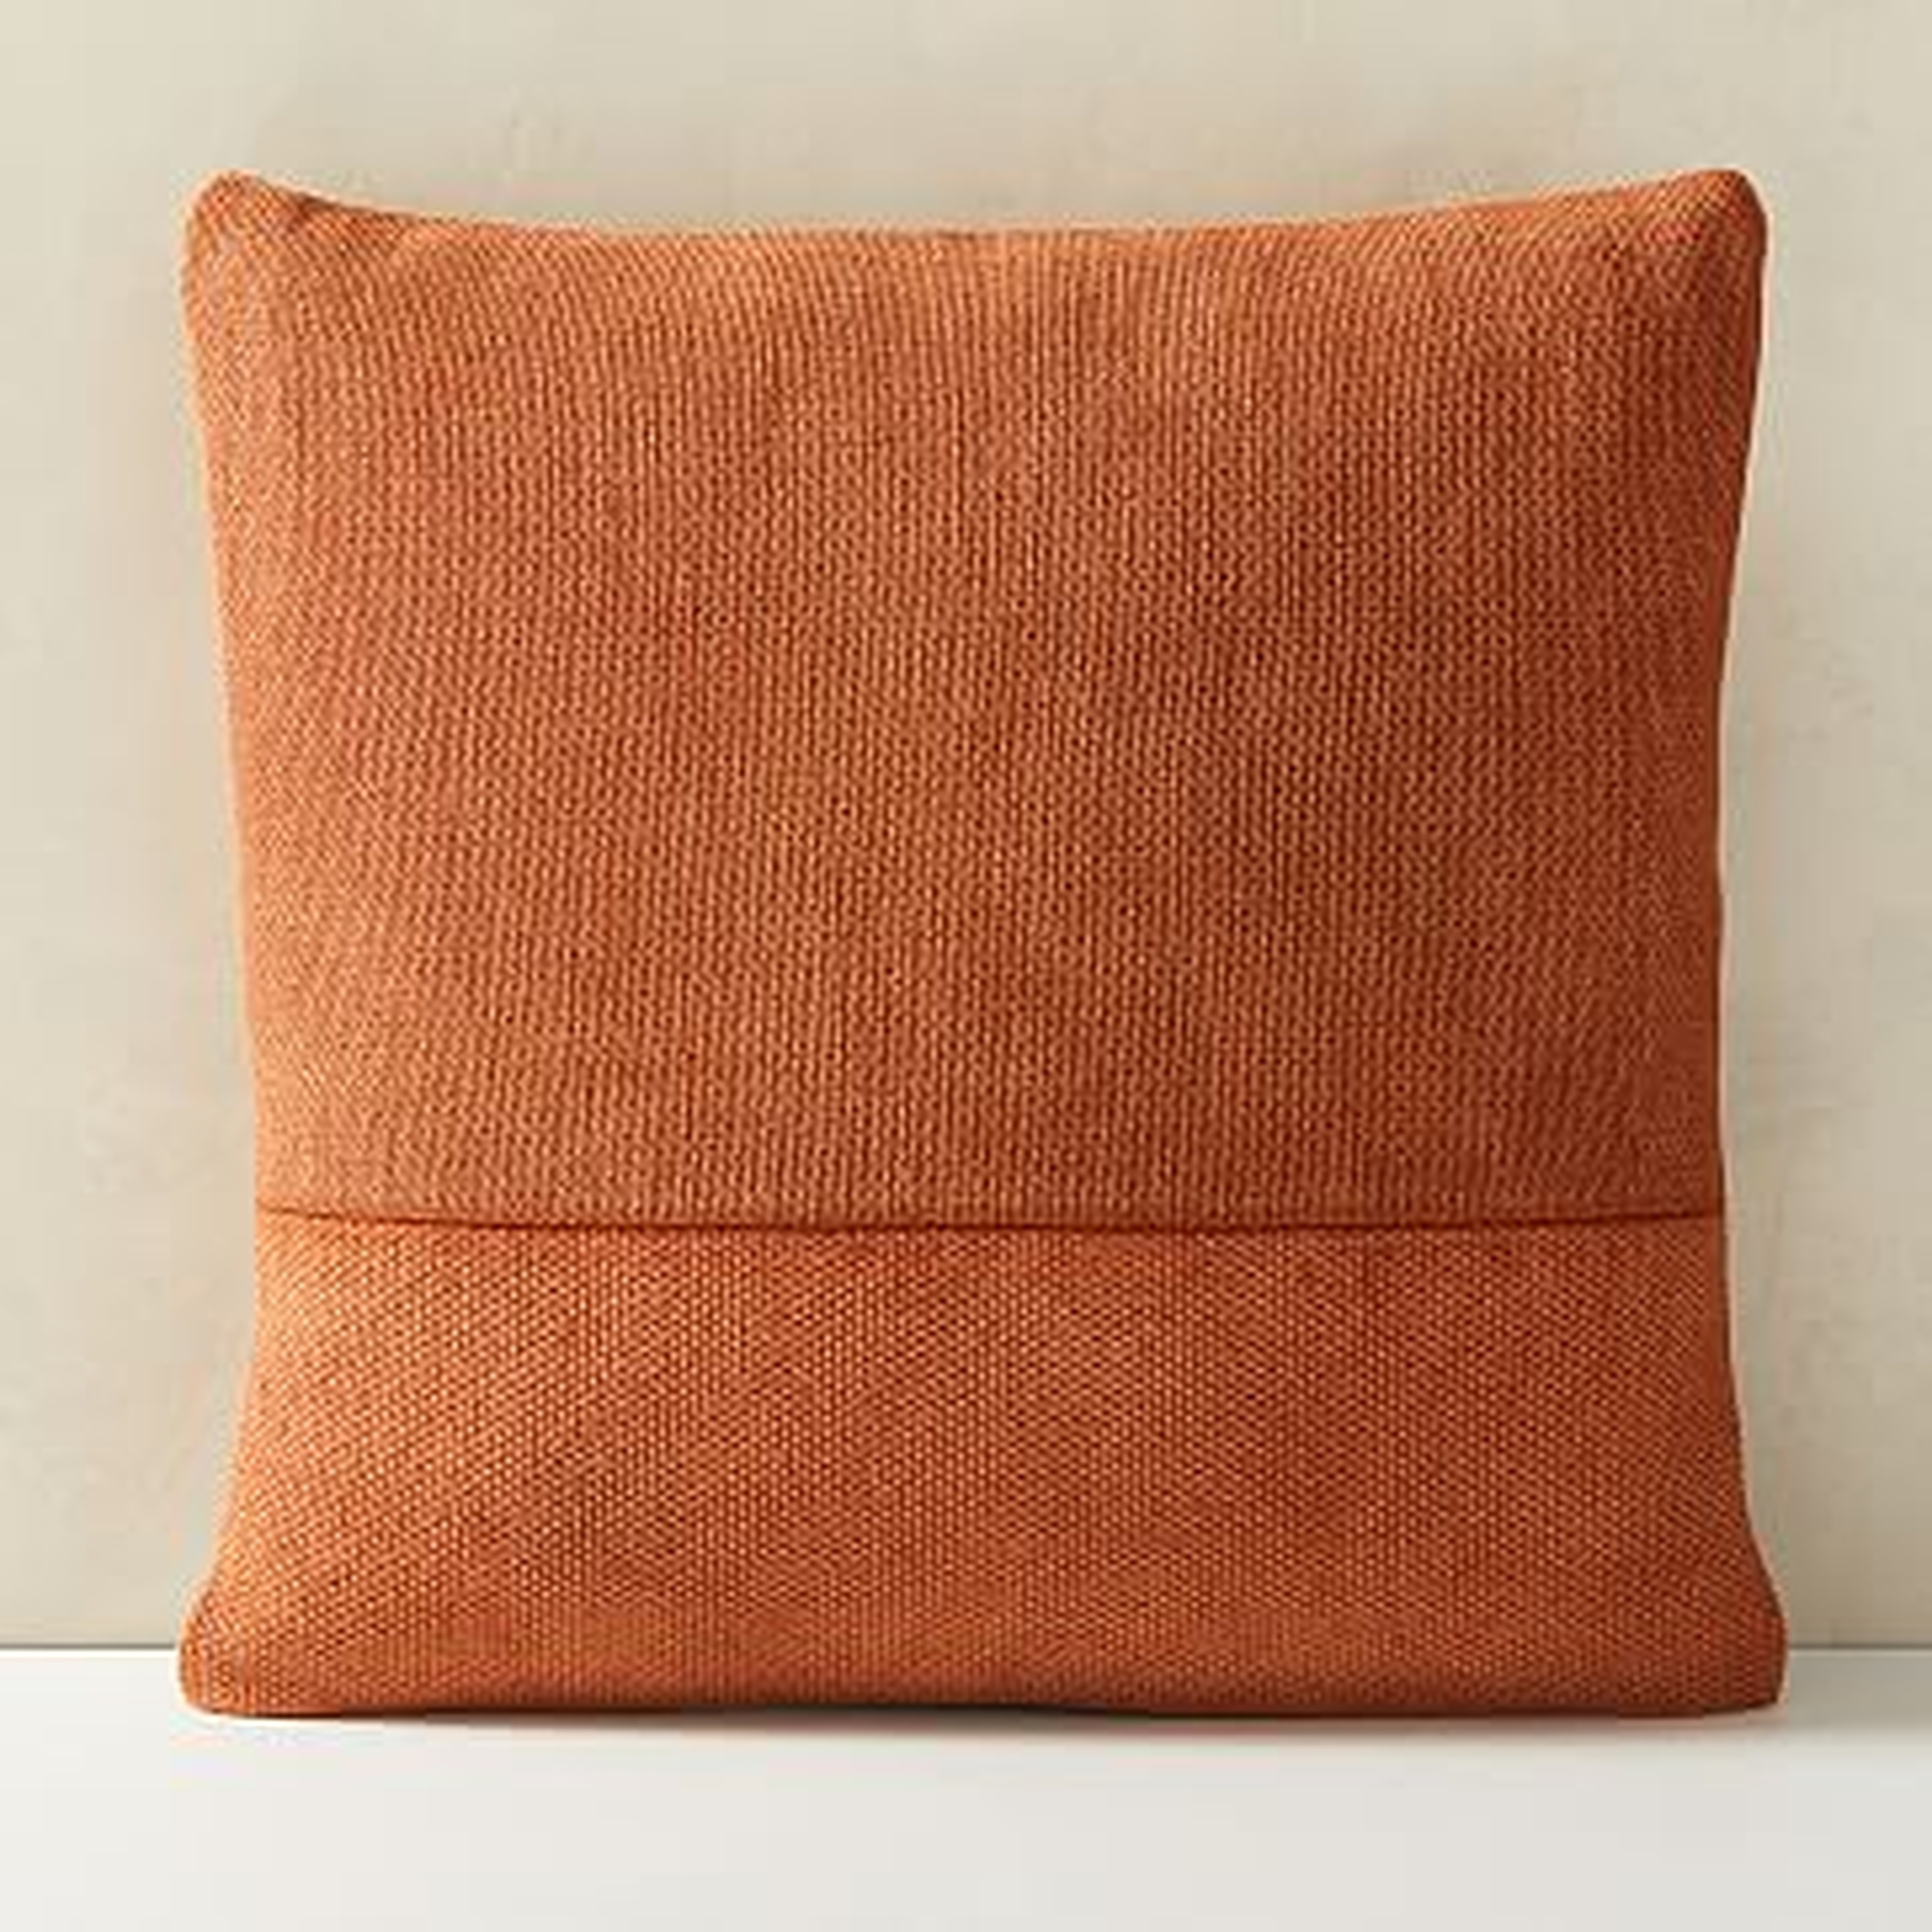 Cotton Canvas Pillow Cover, 18"x18", Copper Rust - West Elm